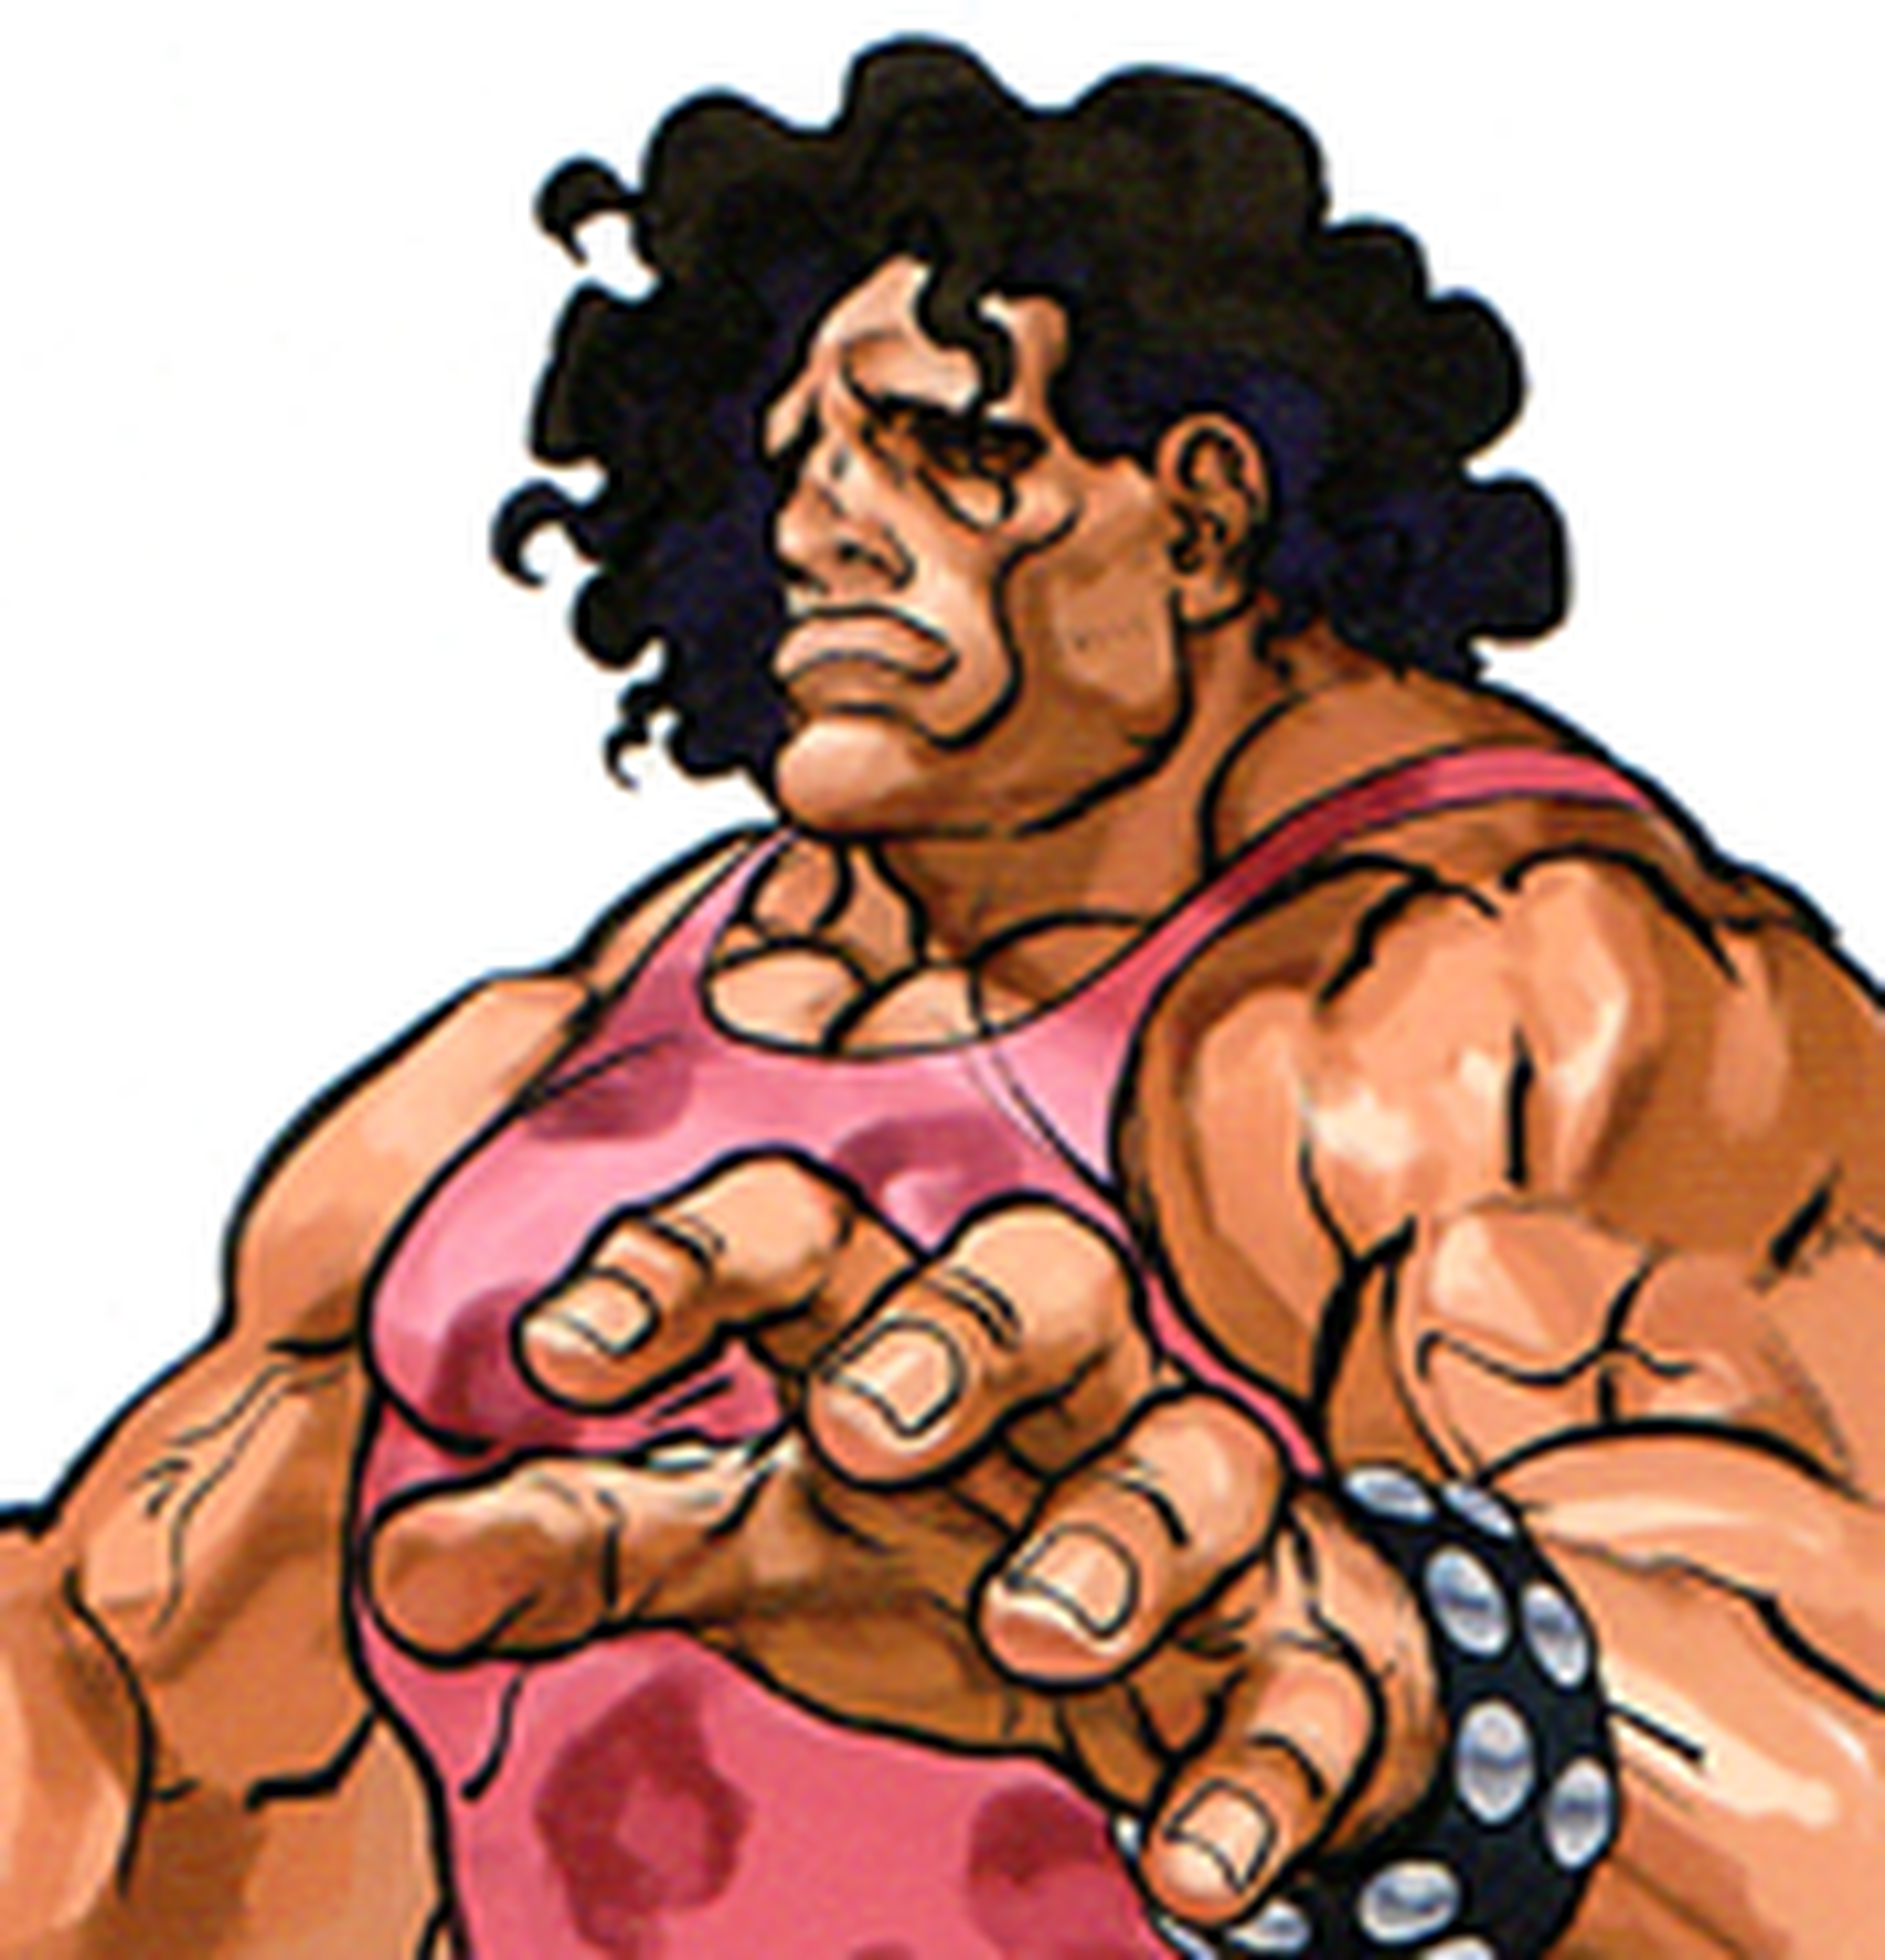 Los 10 peores personajes de Street Fighter